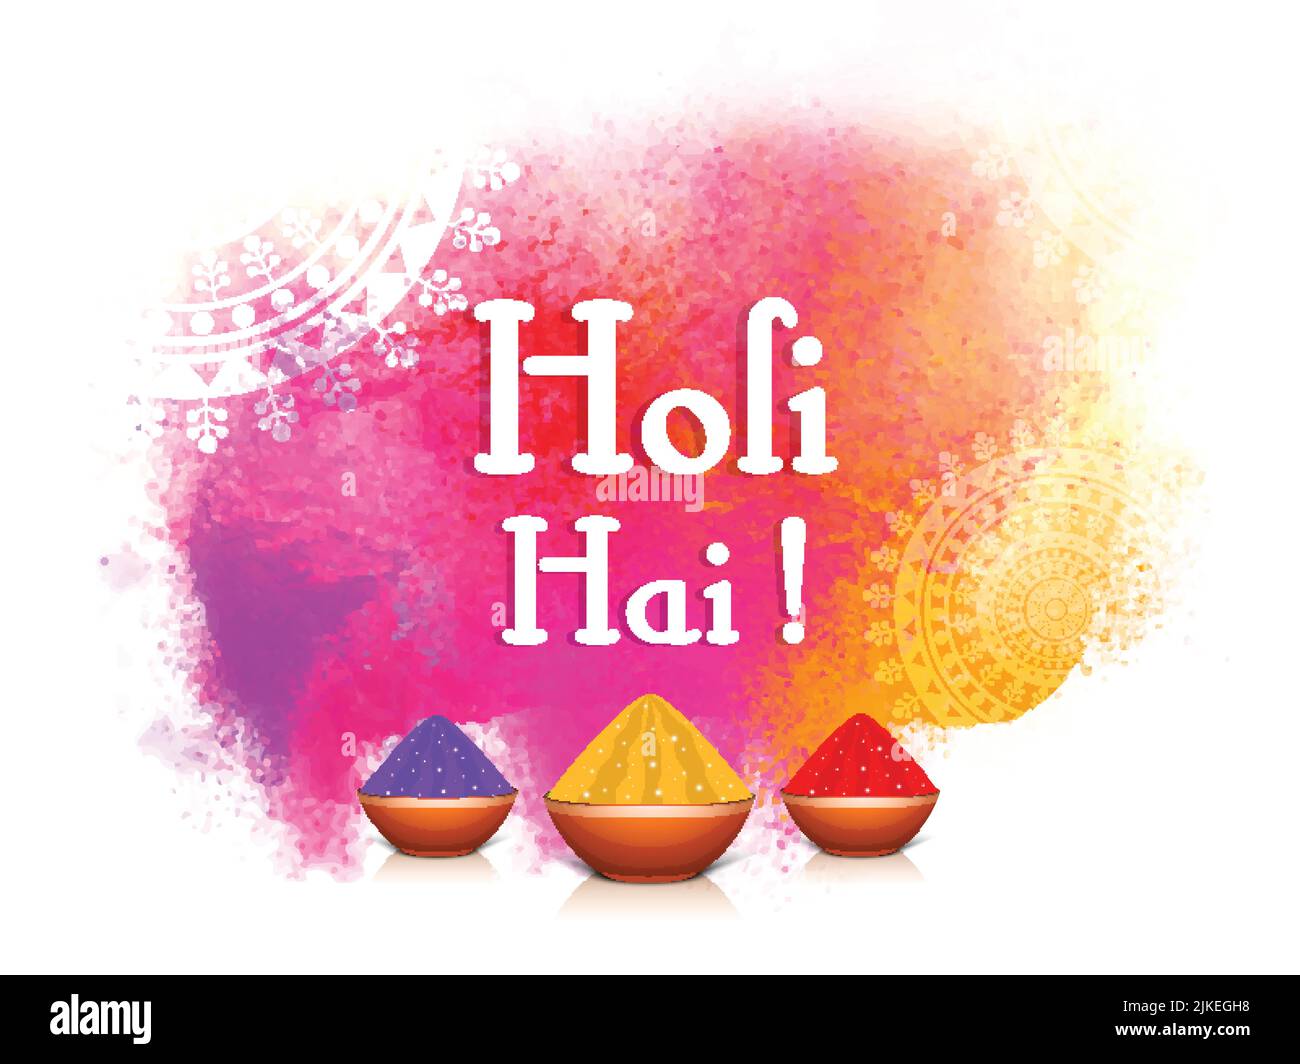 Holi Hai! (Es ist Holi) Text mit glänzenden Schalen voller trockener Farbe (Gulal) und buntem Pulverspritz-Effekt auf weißem Hintergrund. Stock Vektor